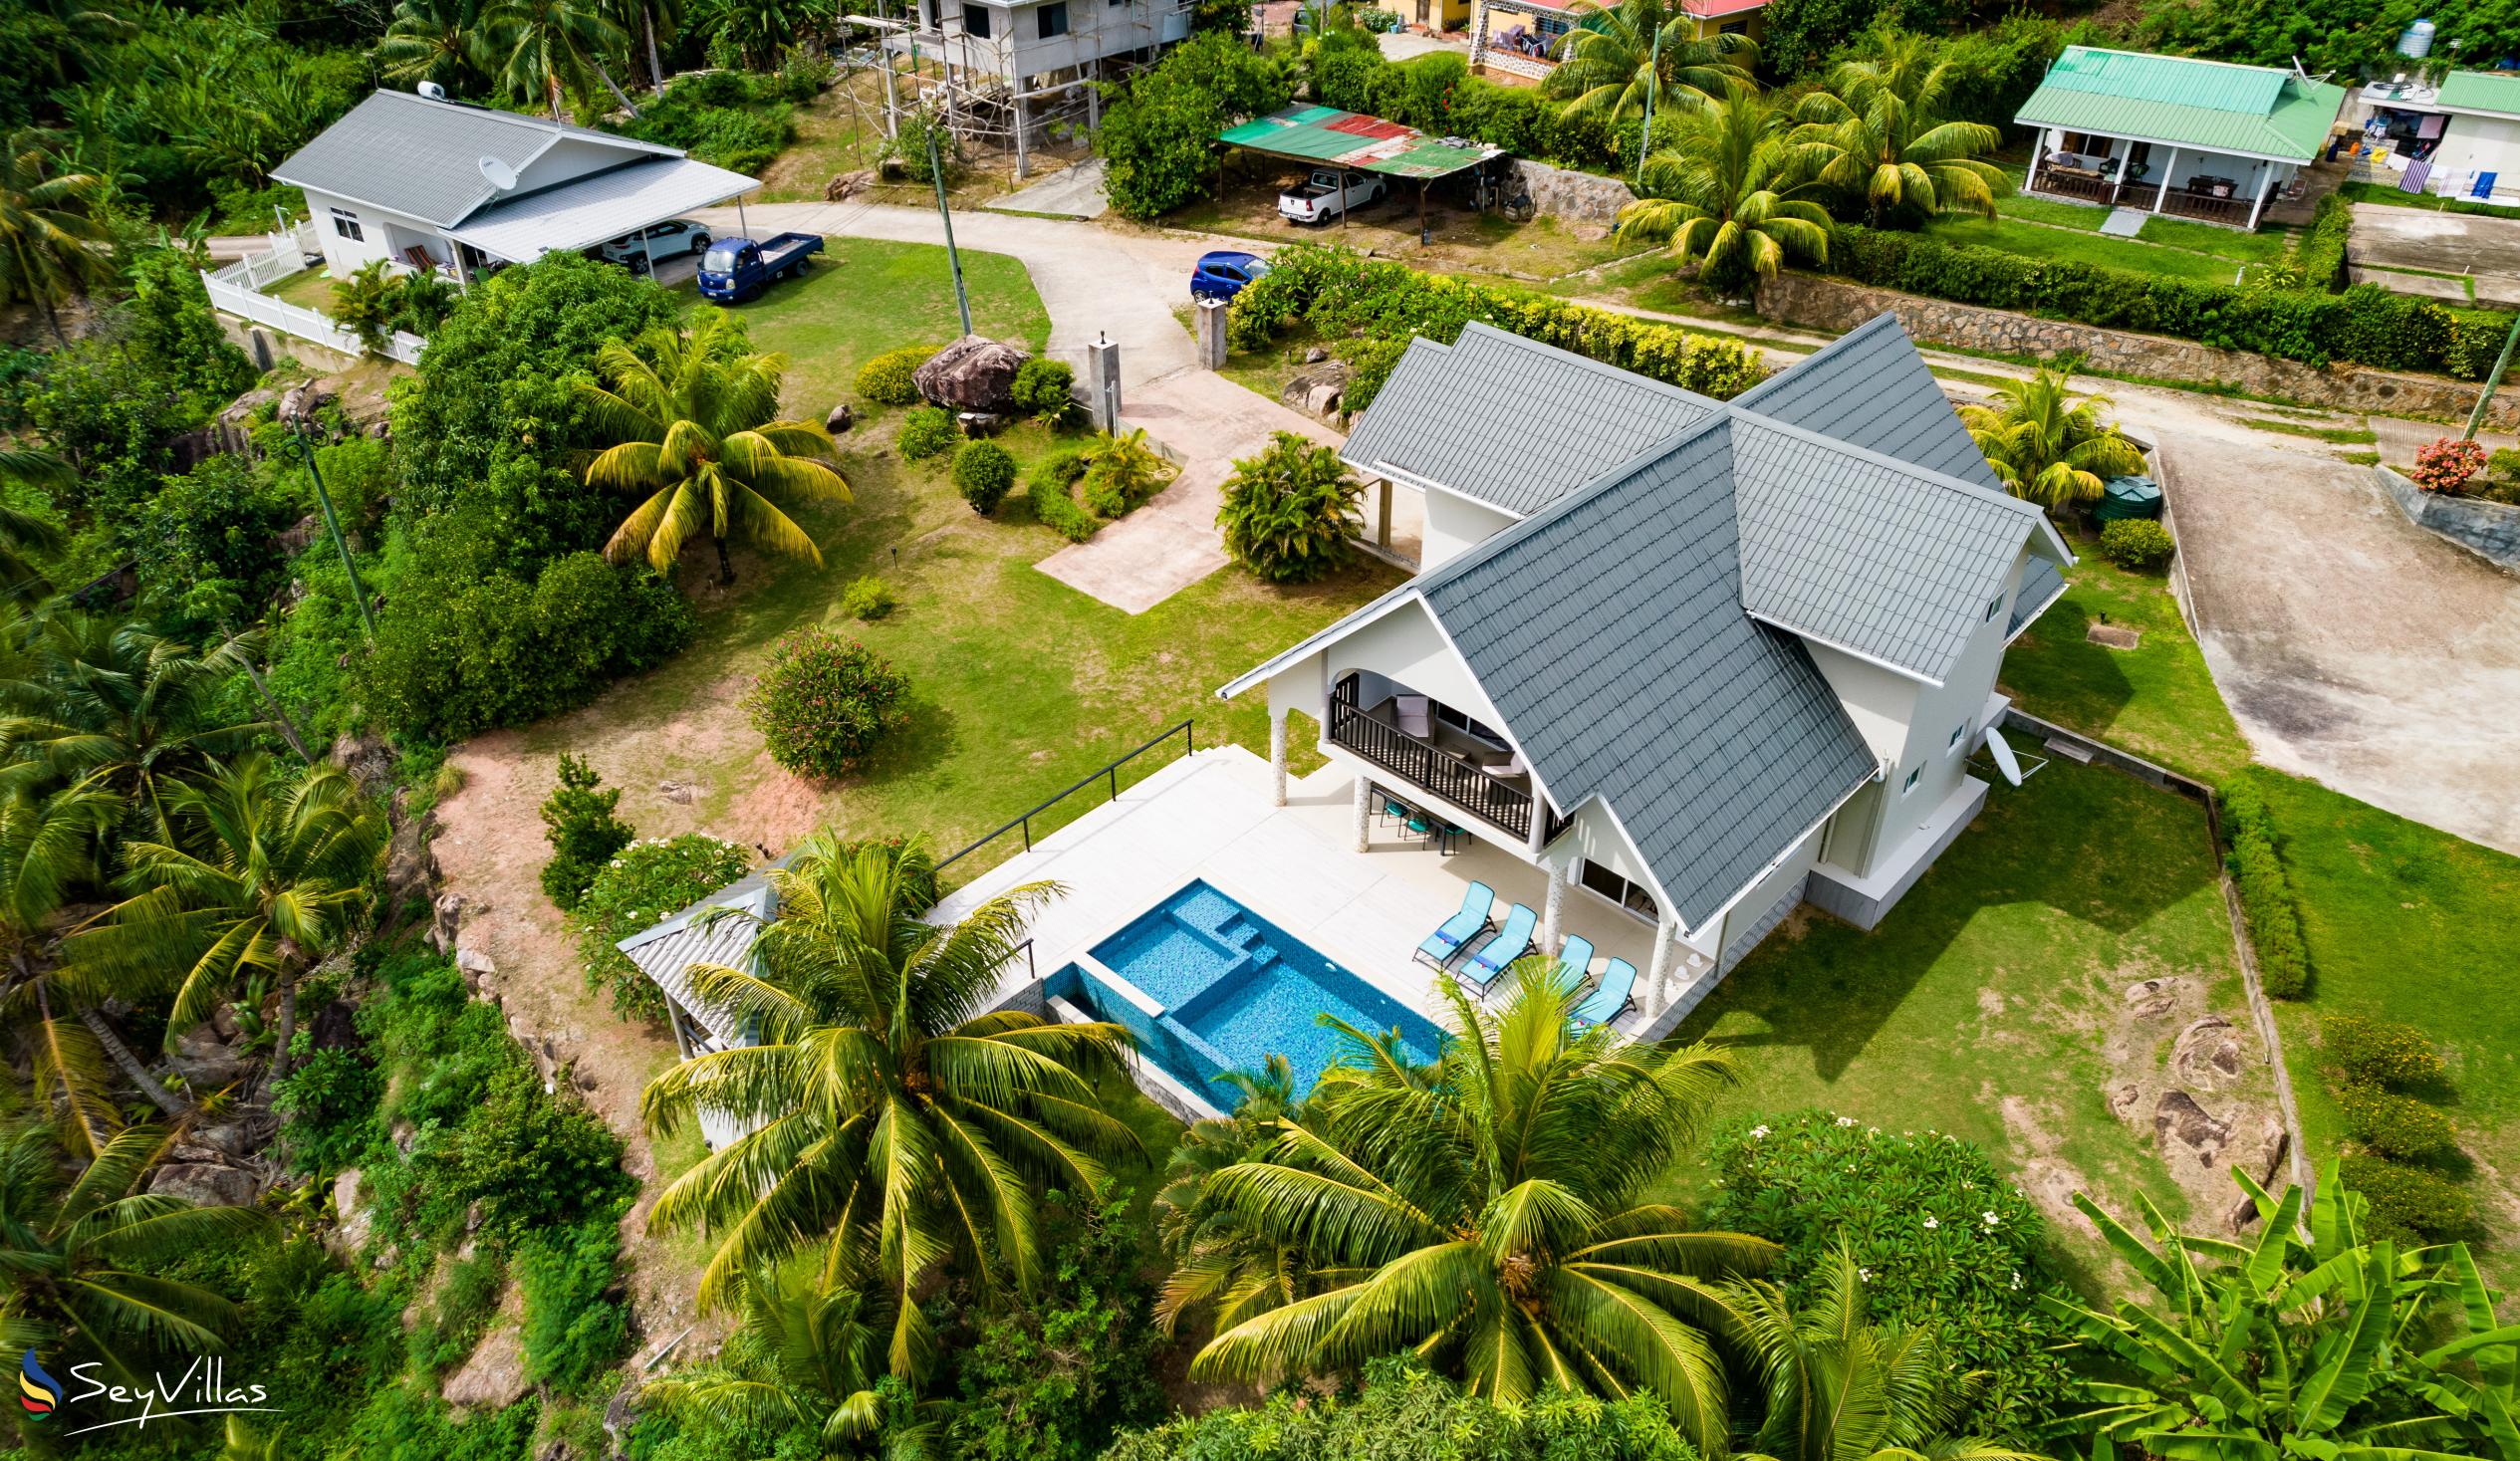 Foto 39: Tranquility Villa - Aussenbereich - Praslin (Seychellen)